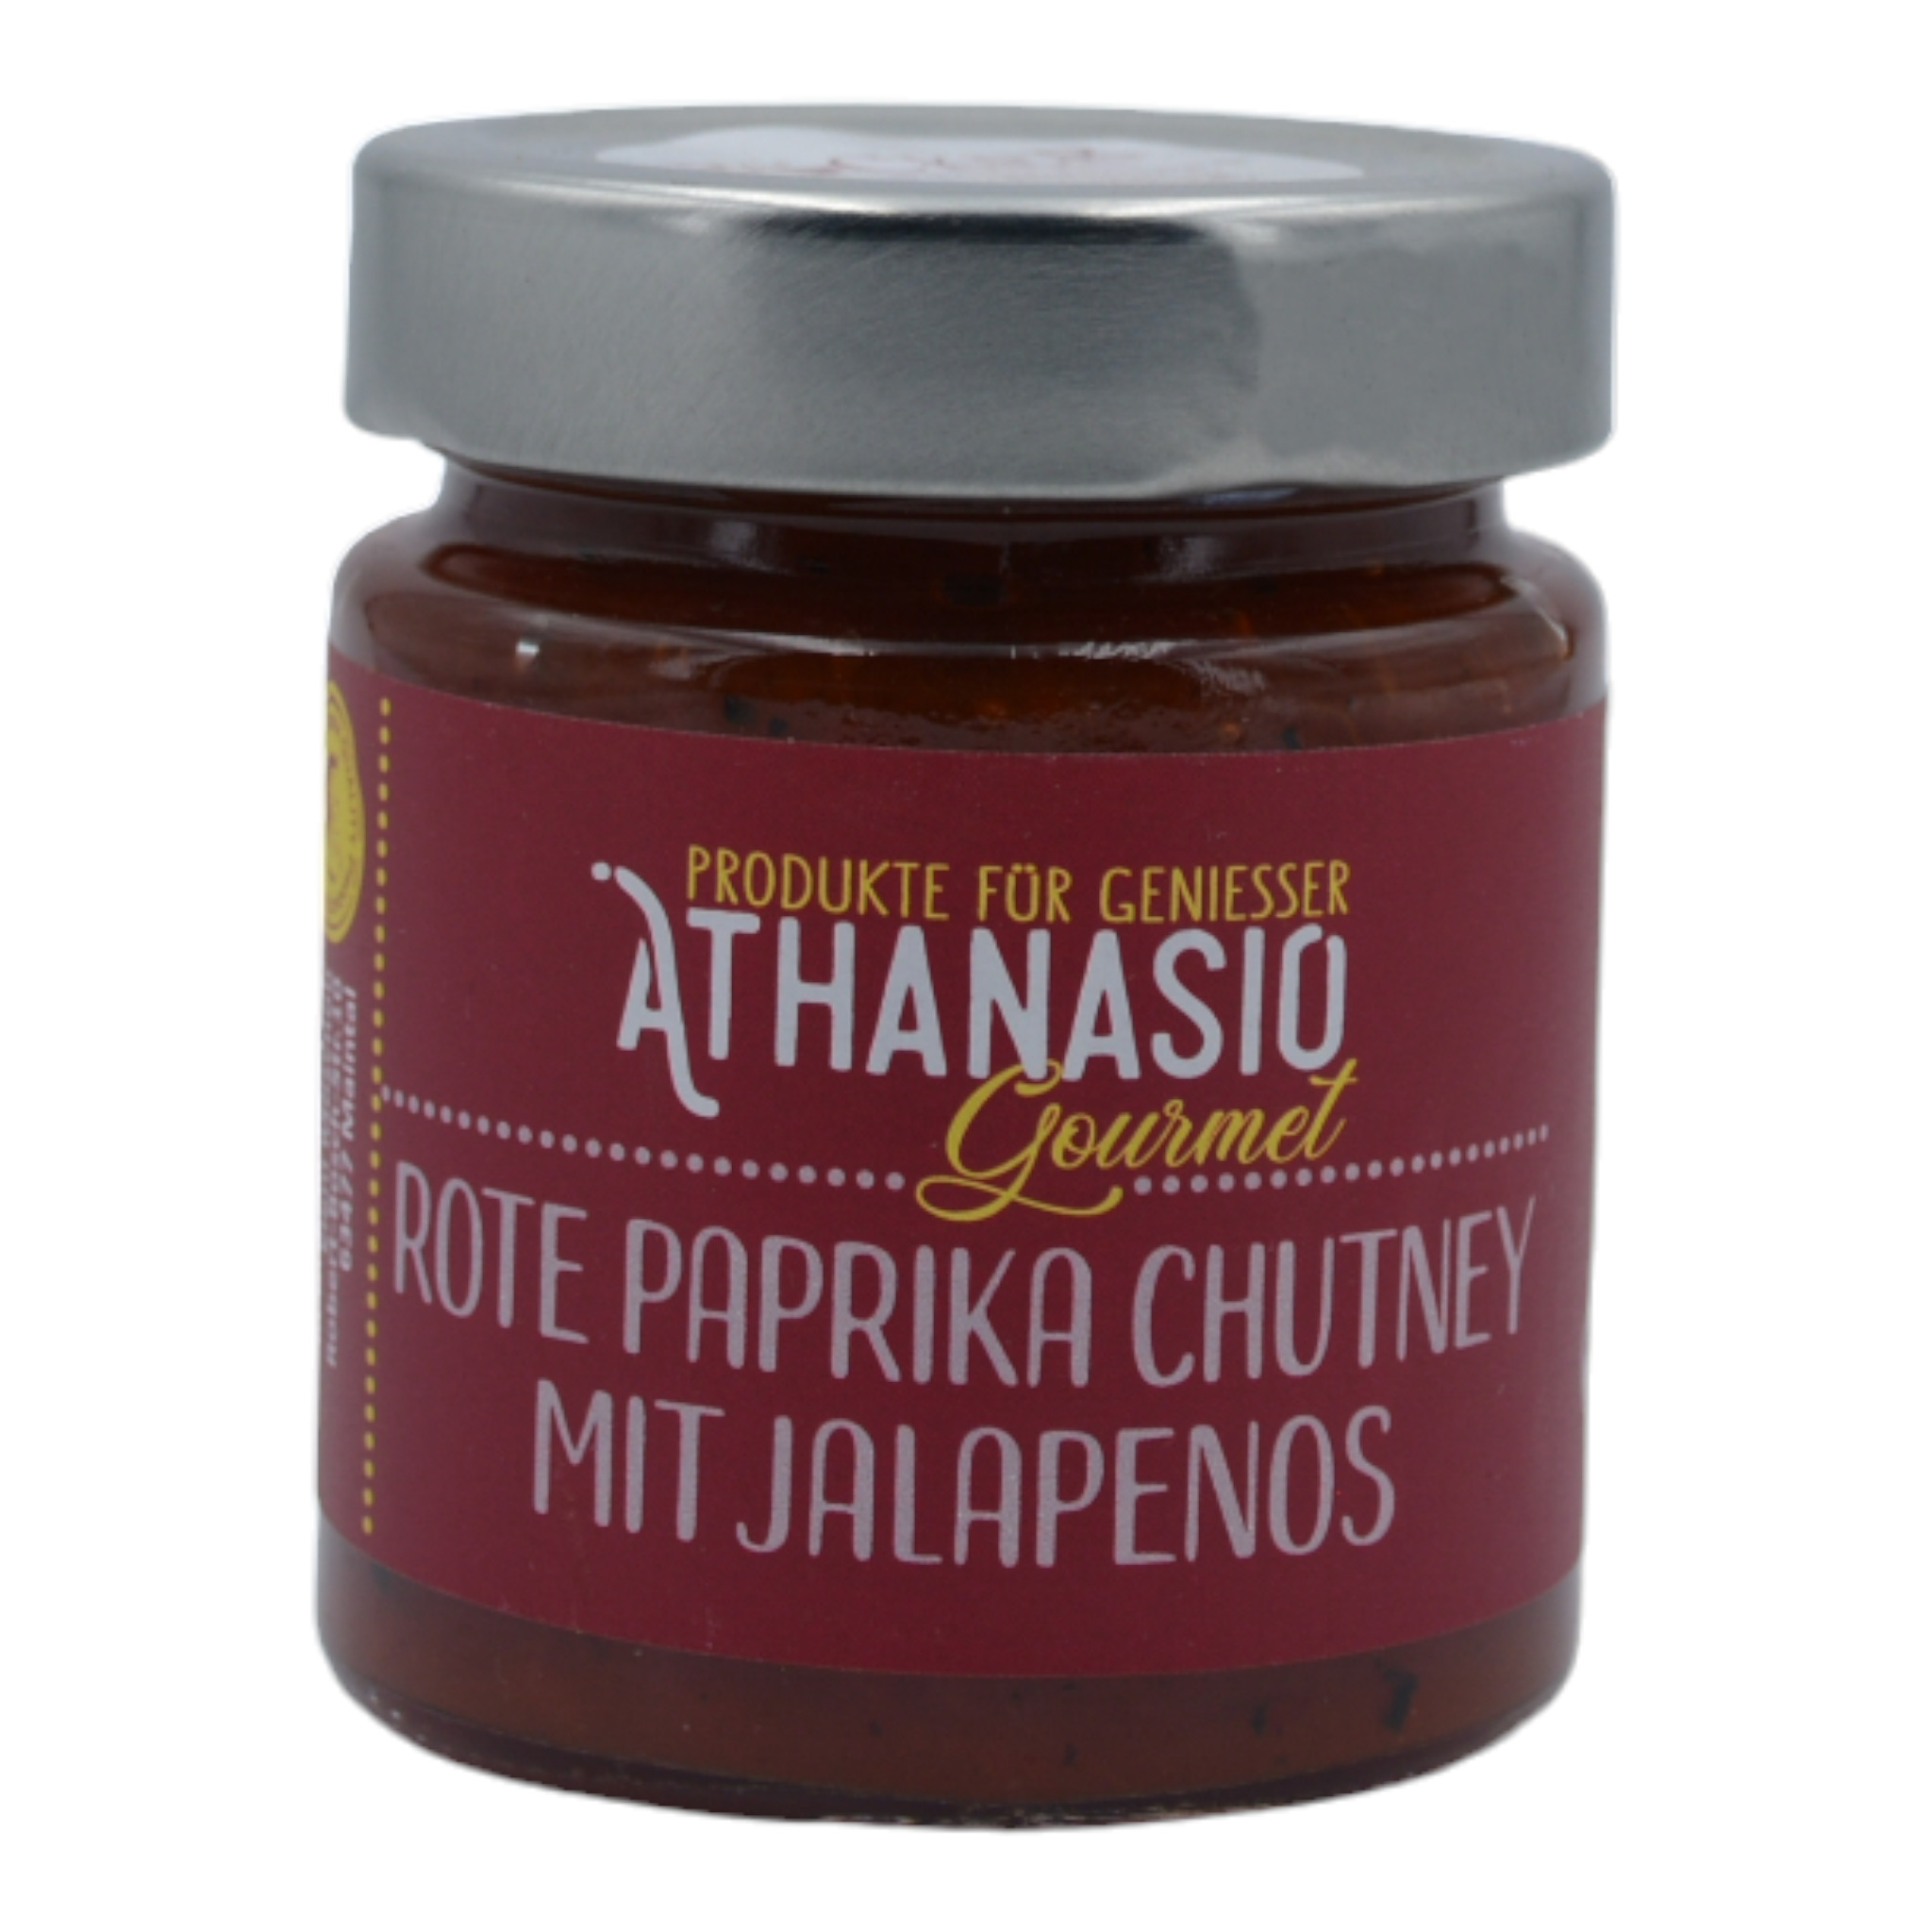 5200250212115 - Athanasio Gourmet Rote Paprika Chutney mit Jalapenos f